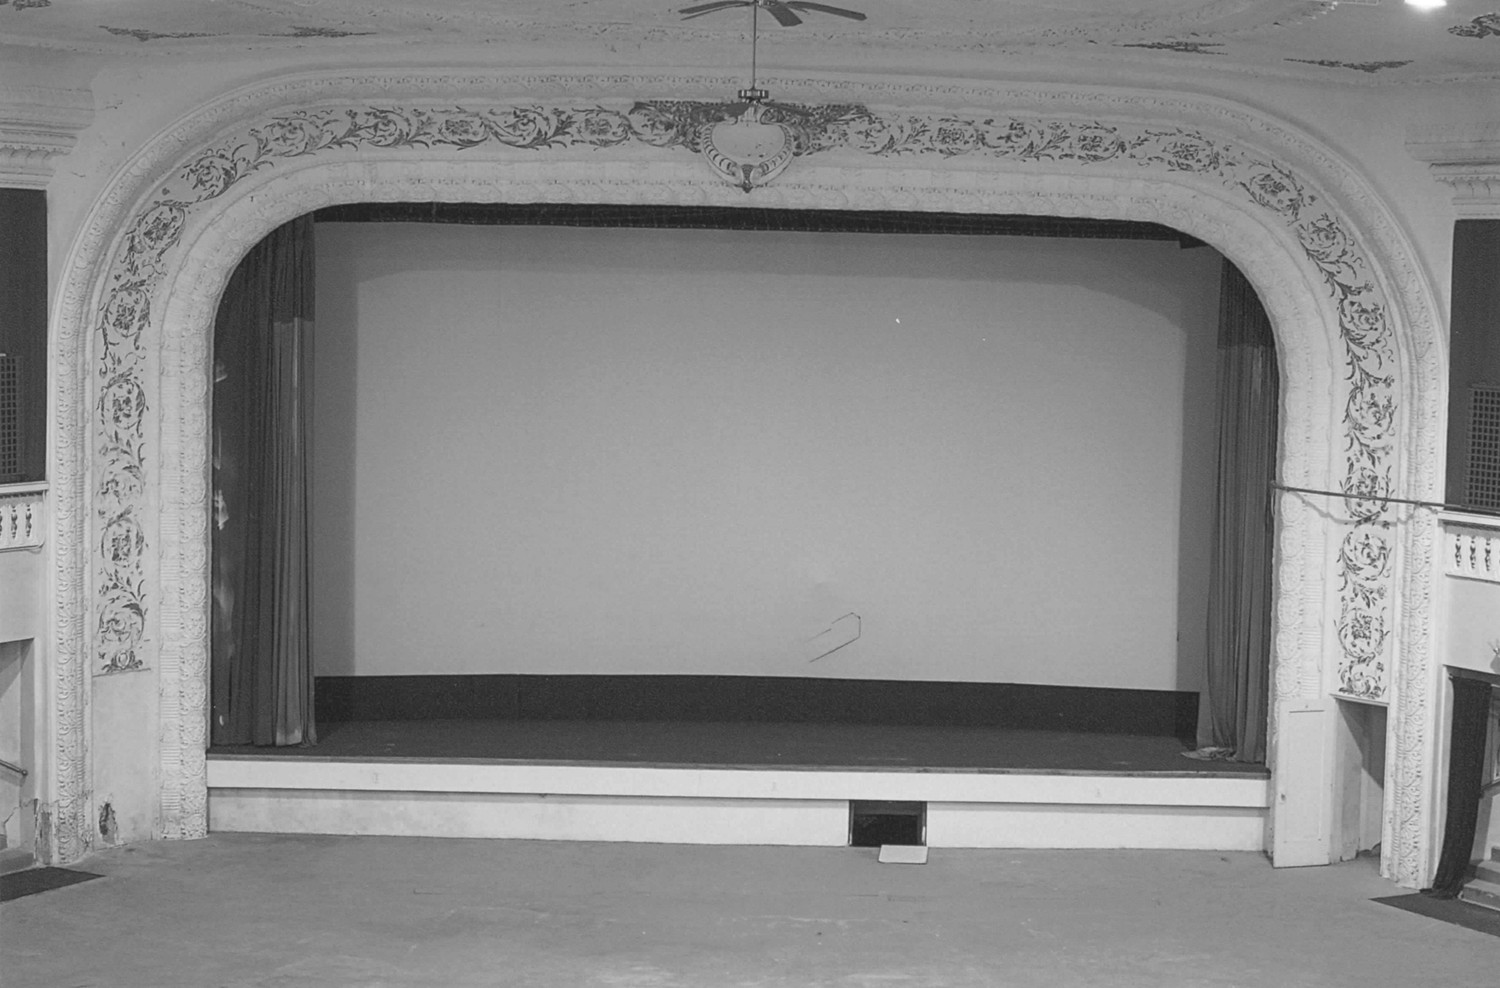 LaSalle Theater Building, Cleveland Ohio Proscenium (2010)